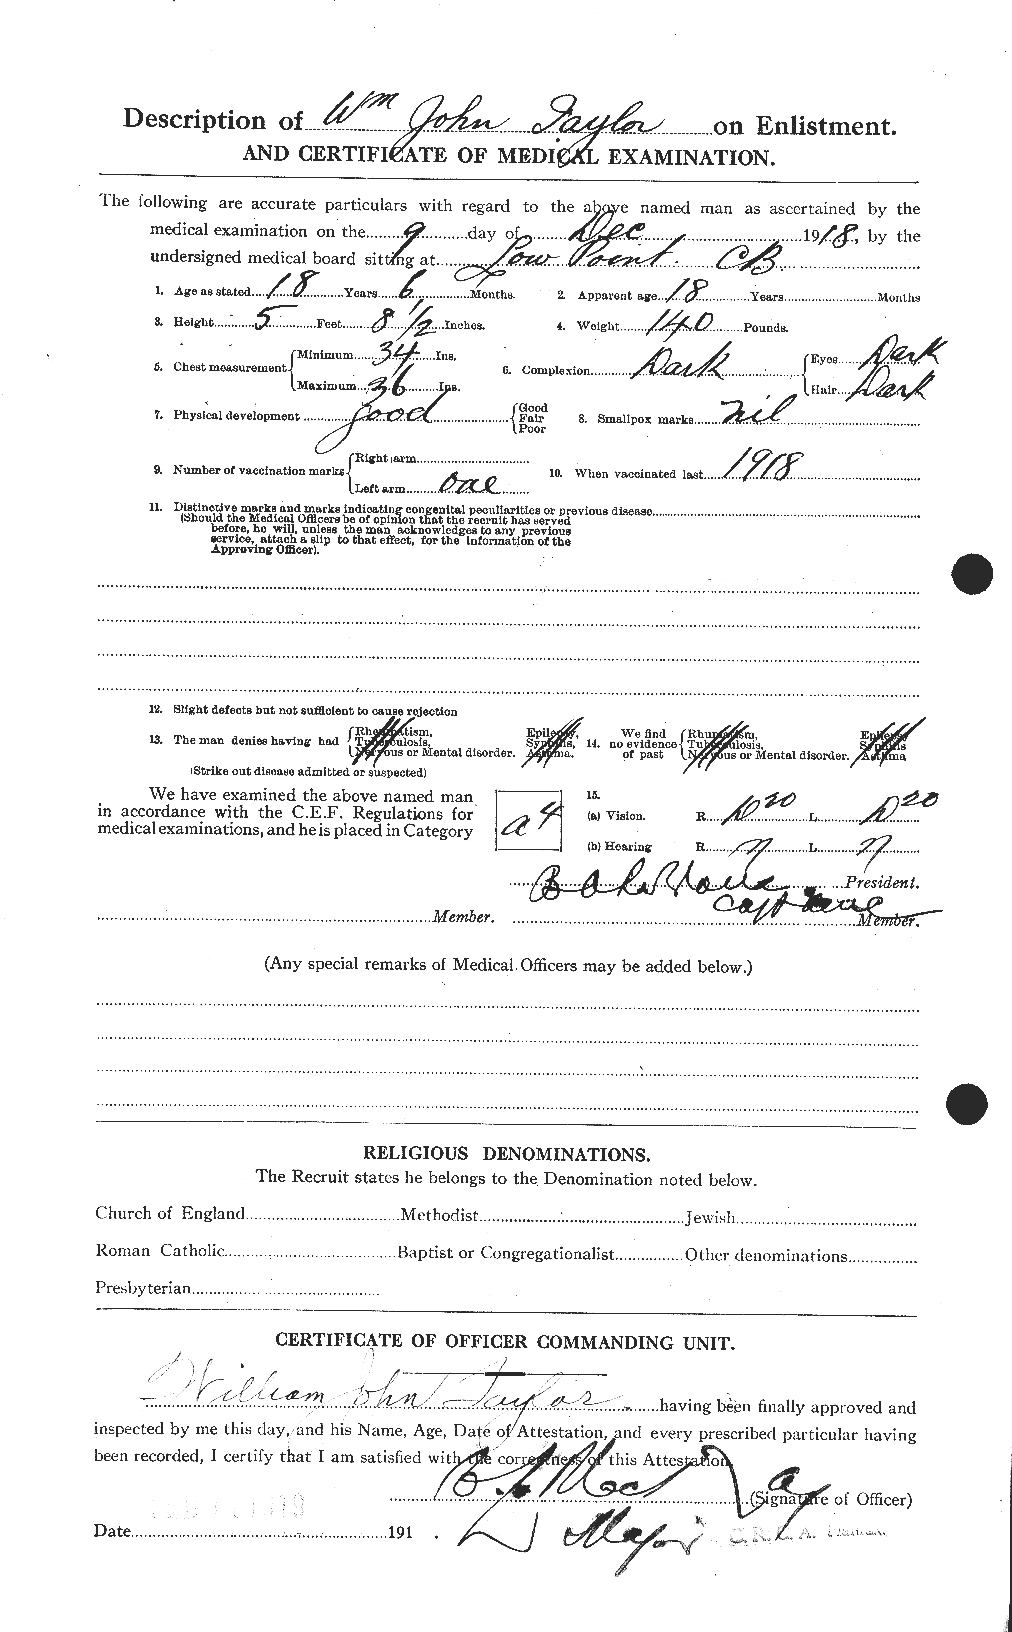 Dossiers du Personnel de la Première Guerre mondiale - CEC 628308b